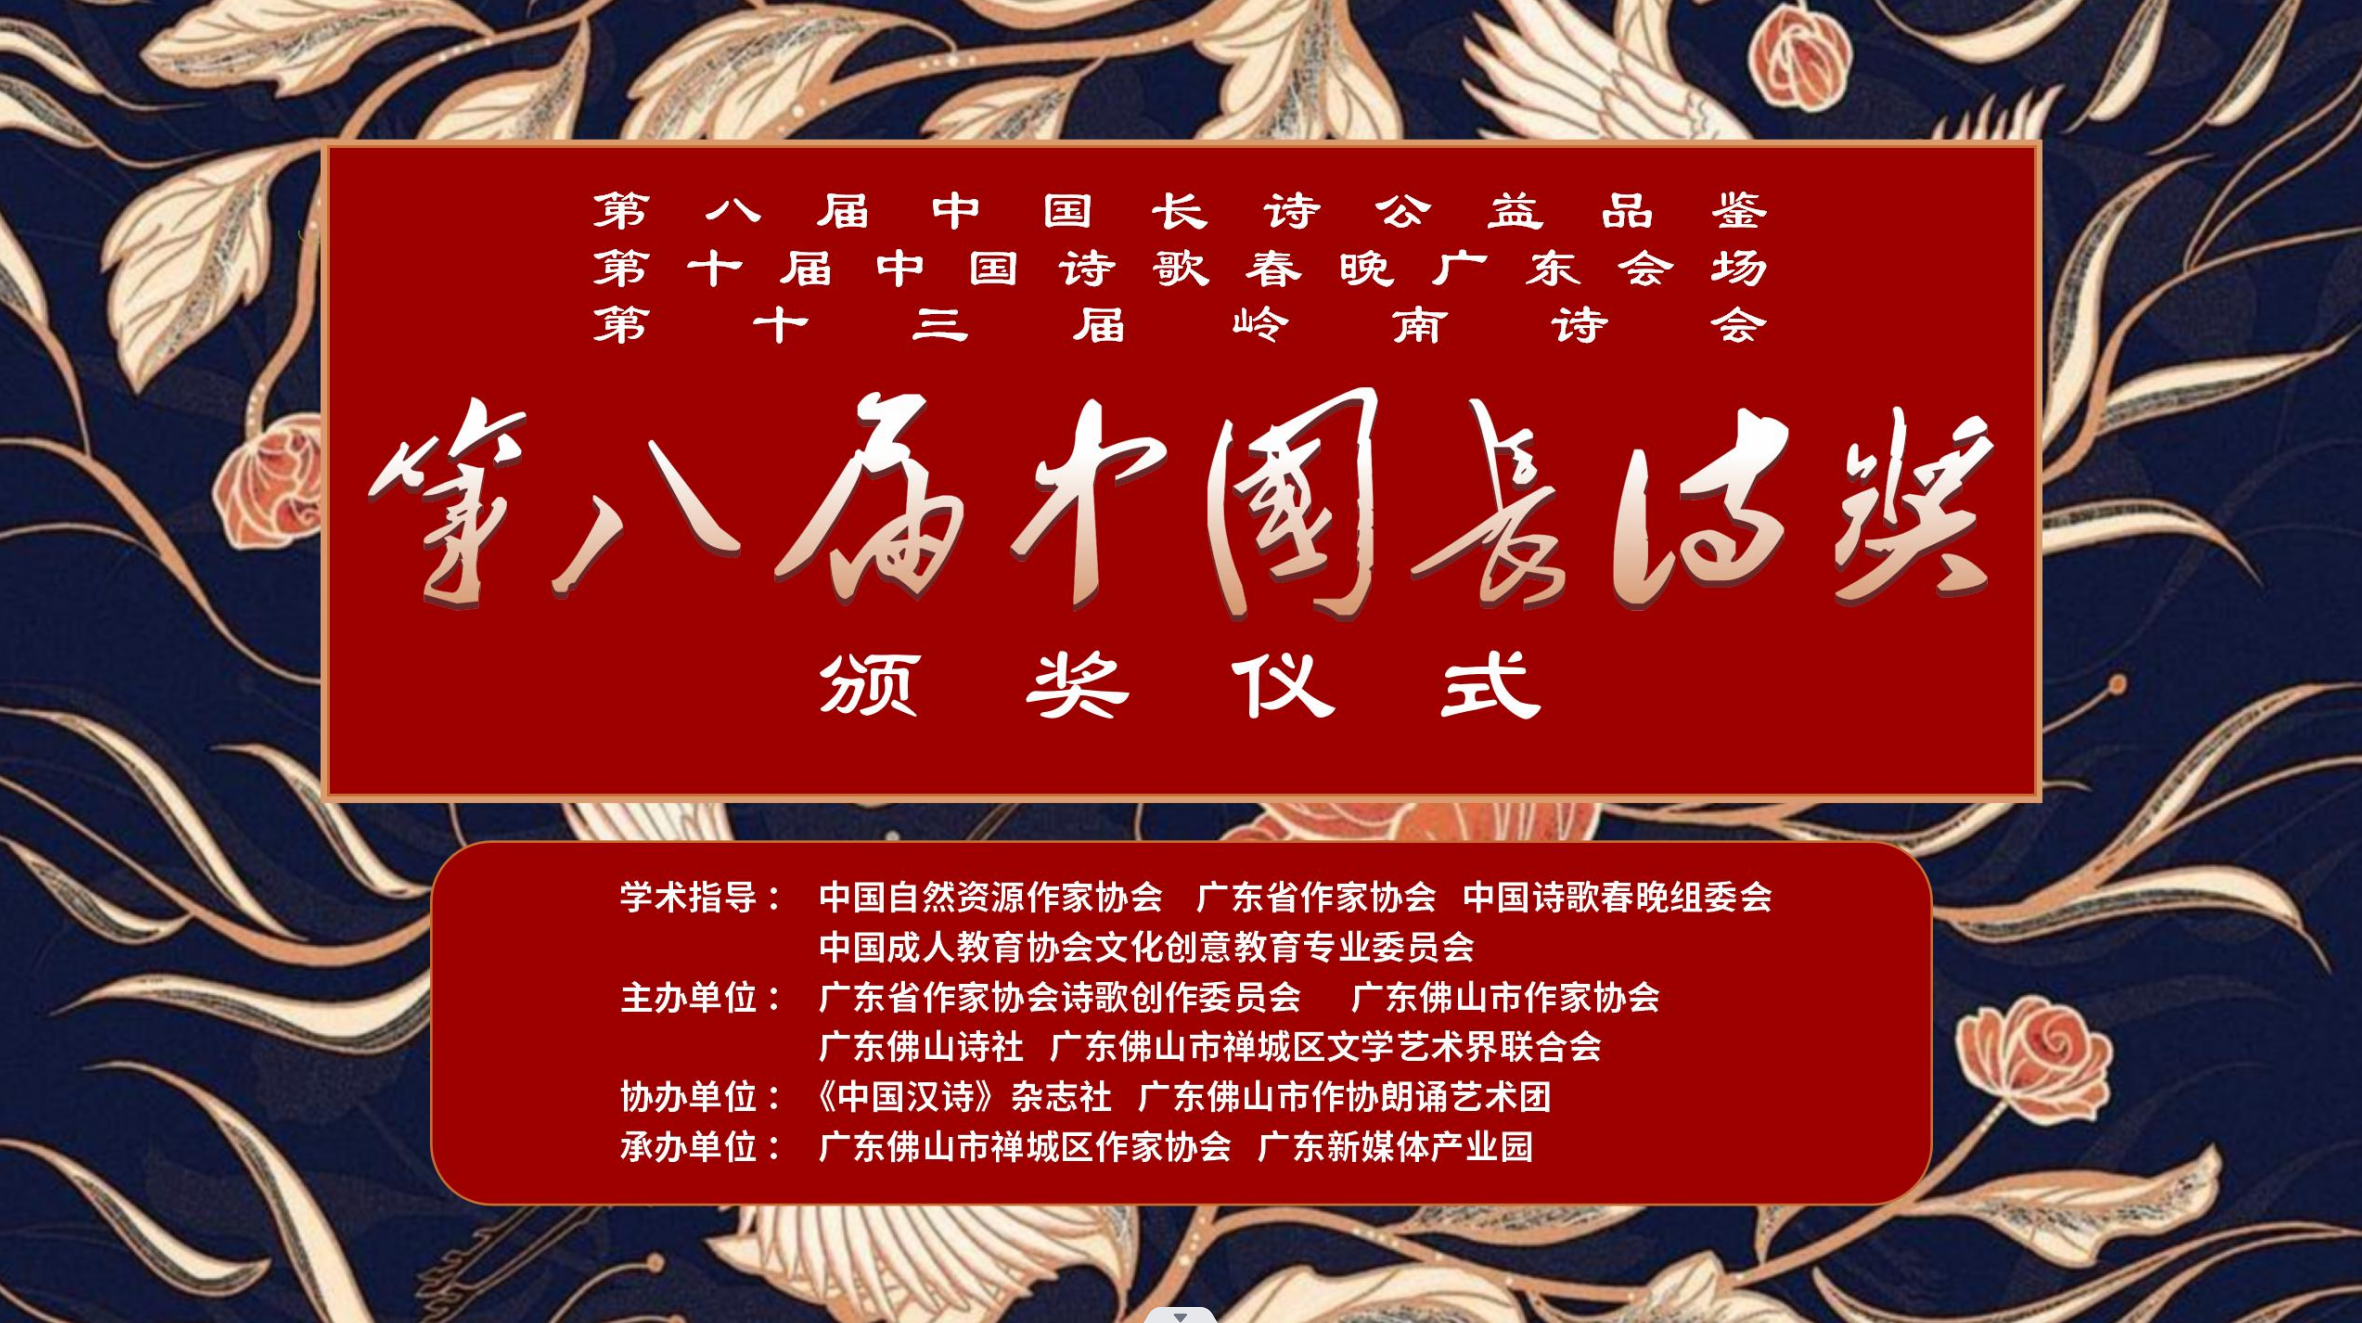 第八届中国长诗奖颁奖典礼在广东佛山举行-中南文化网